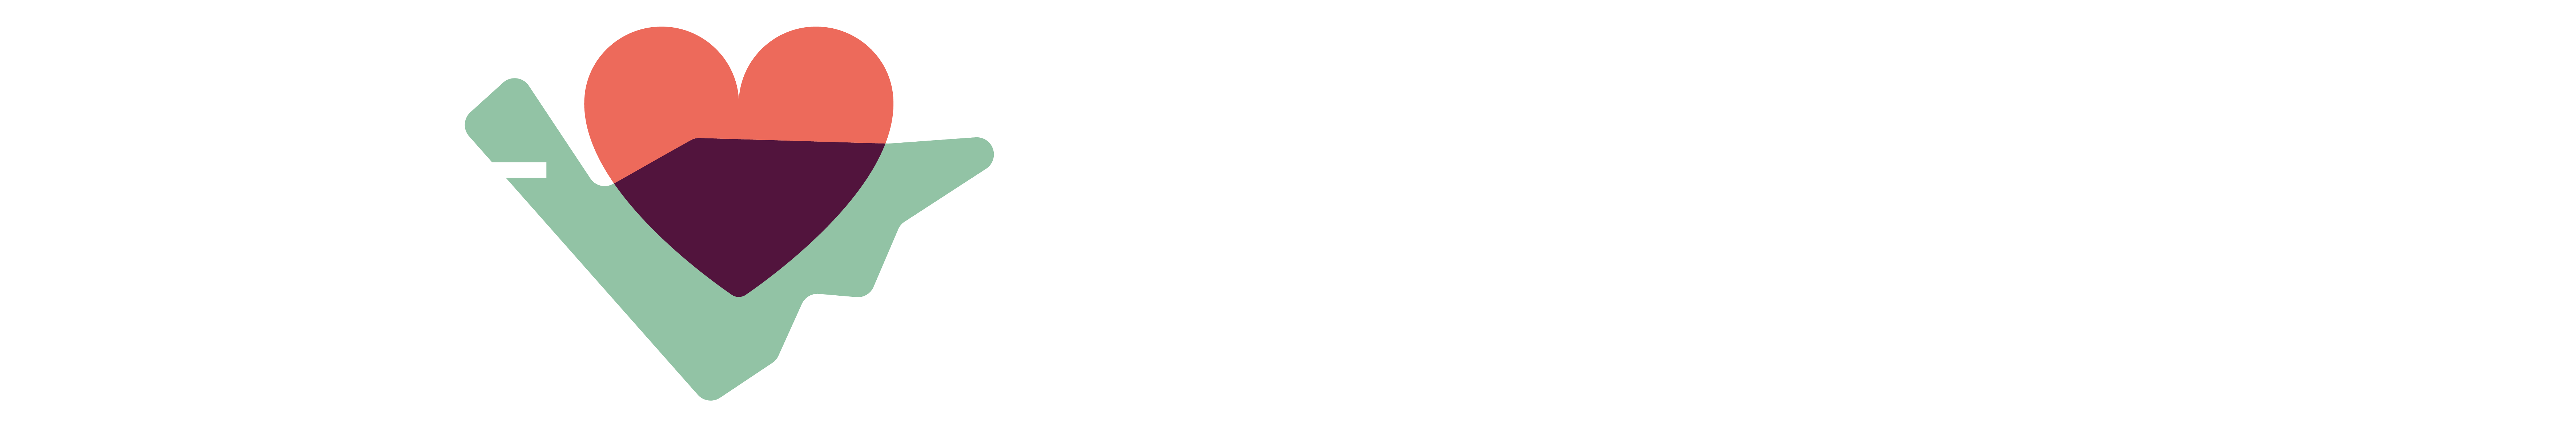 Pact Woensel Zuid logo